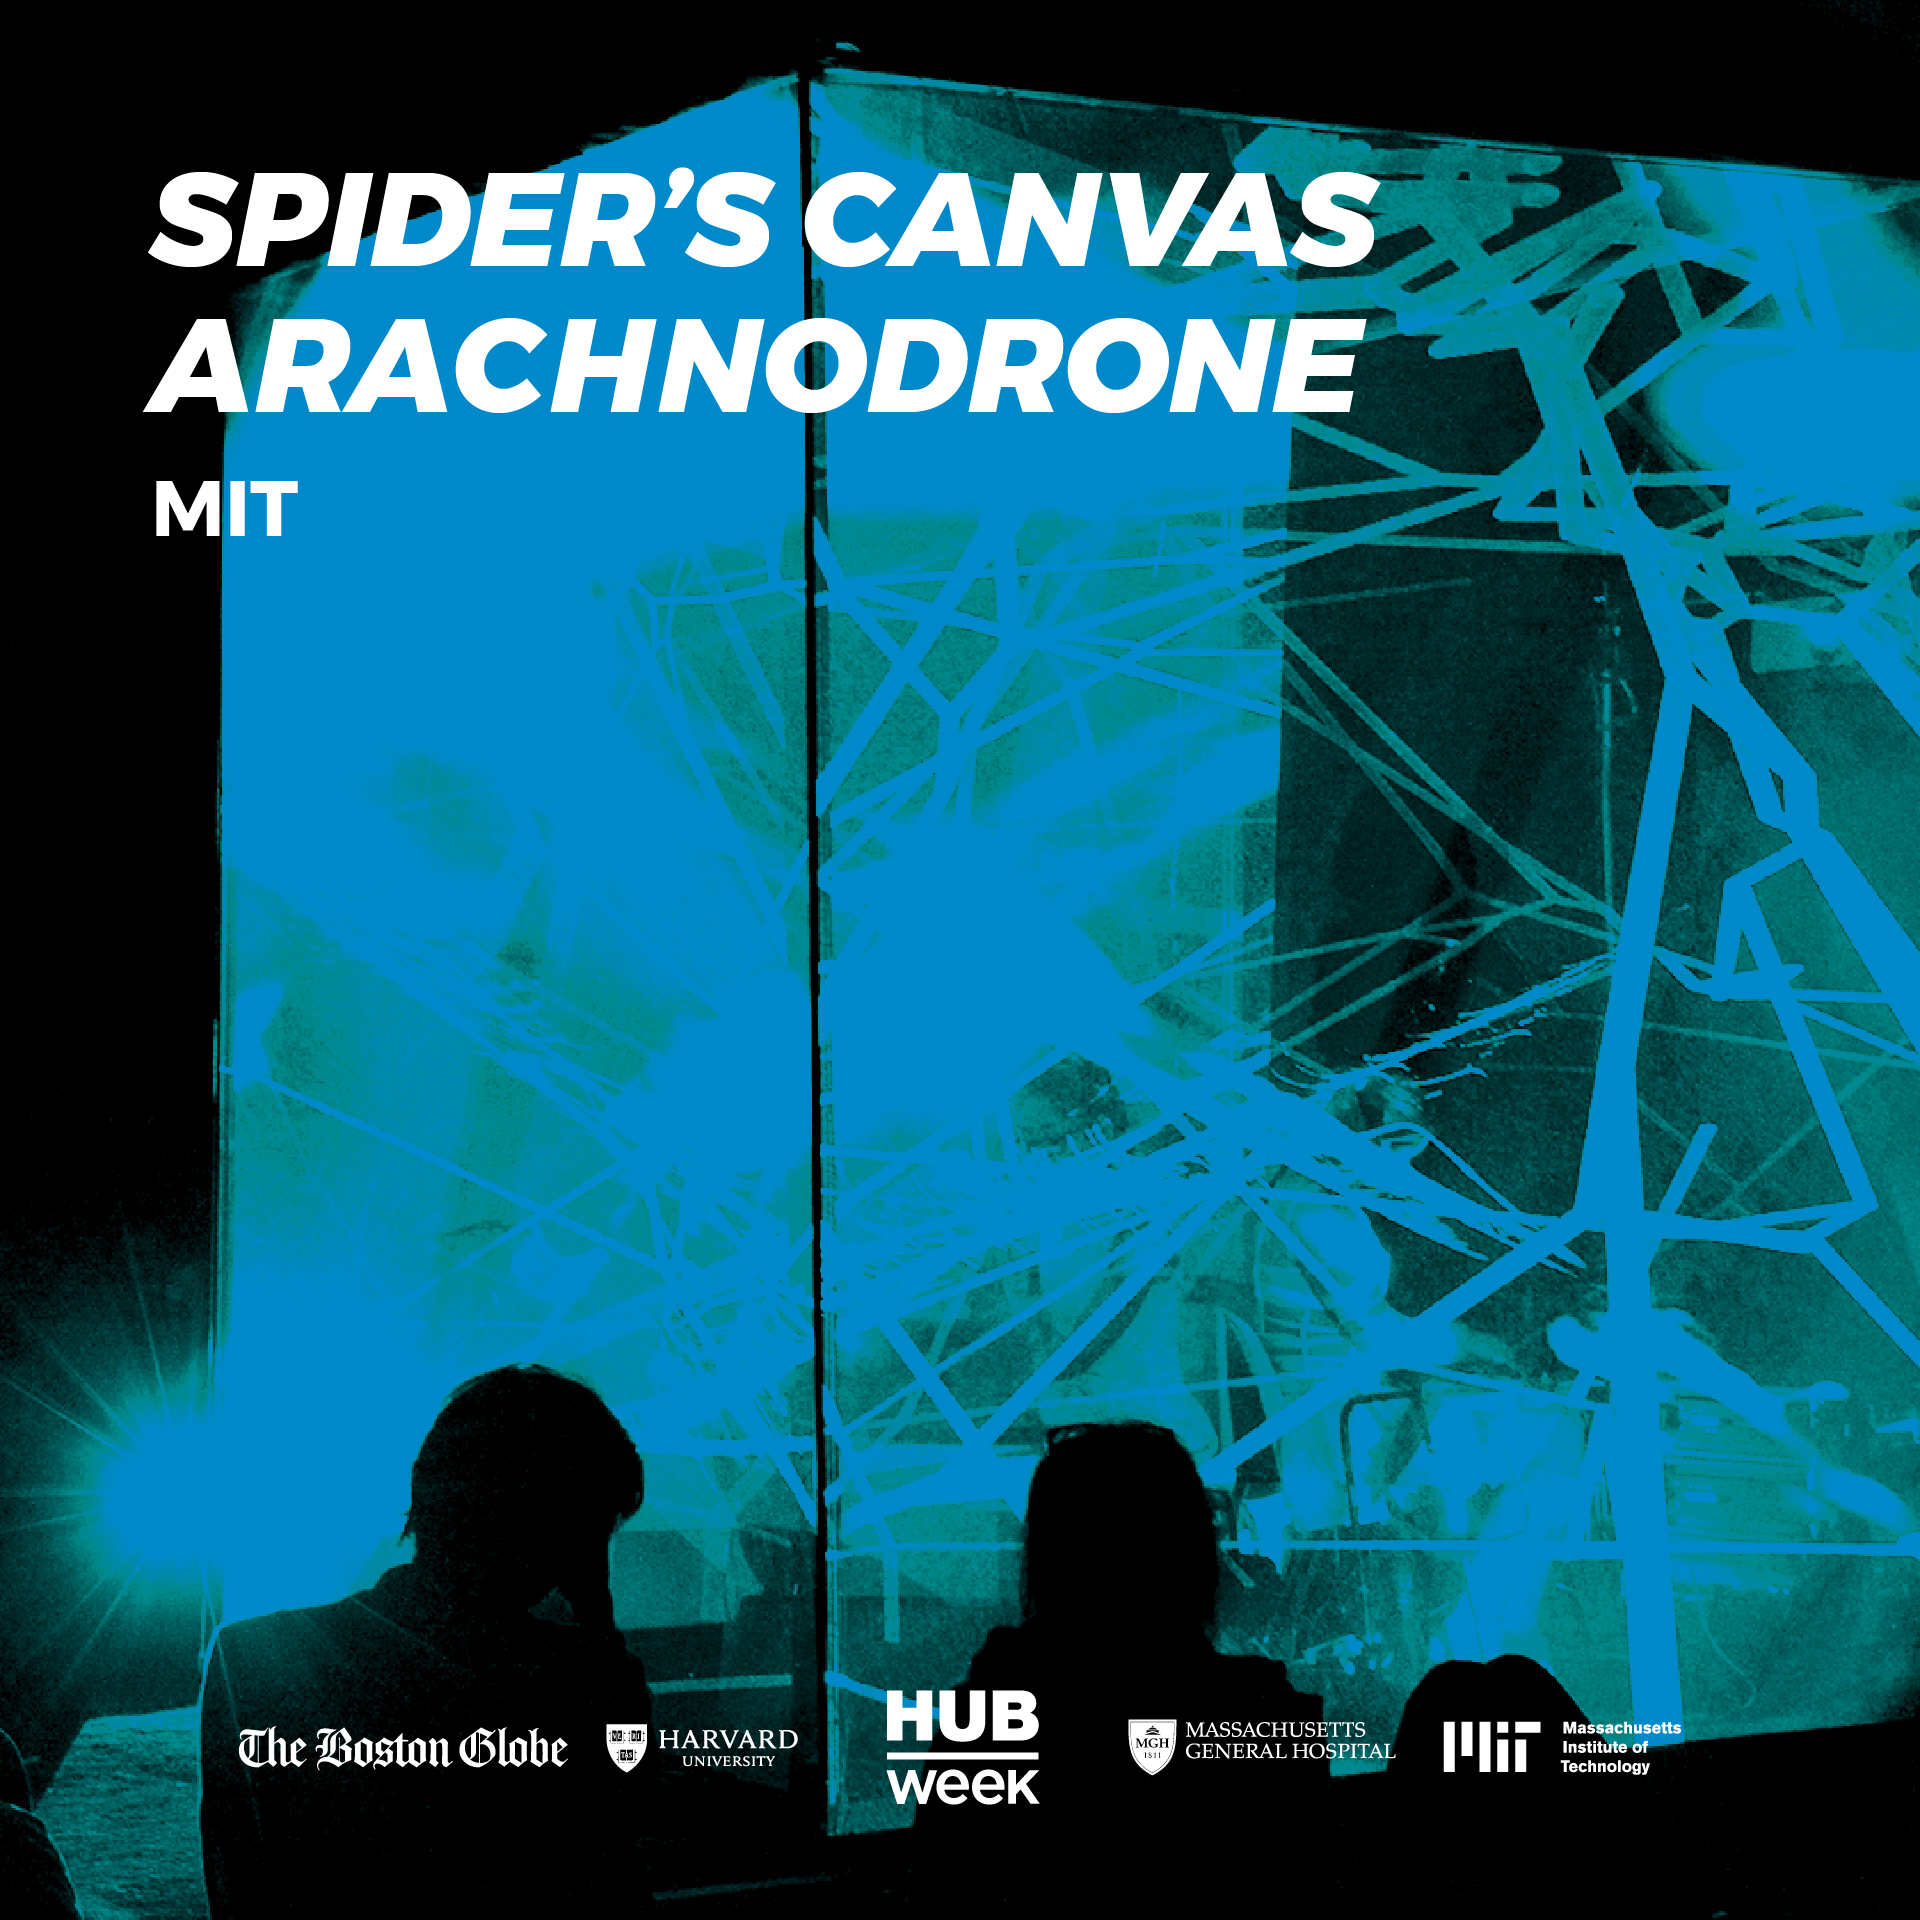 Spiders-Canvas-Arachnodrone-MIT-101